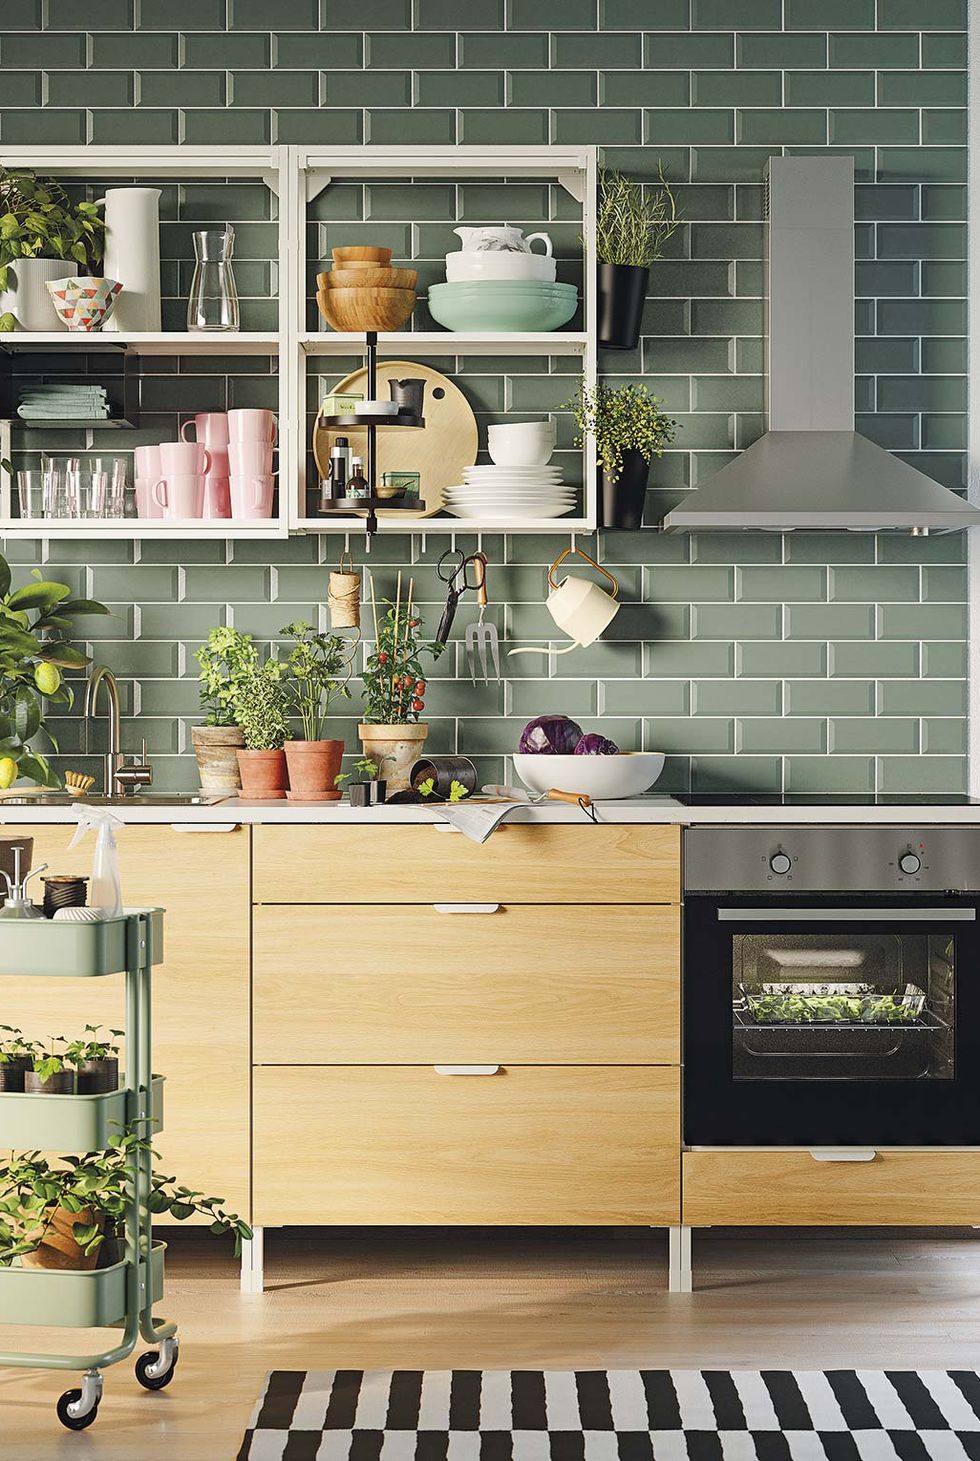 Limpieza en la cocina: 30 objetos que deberías tirar hoy mismo para poner  orden  Armario de cocina rincón, Ideas de organización de cocina, Diseño  muebles de cocina